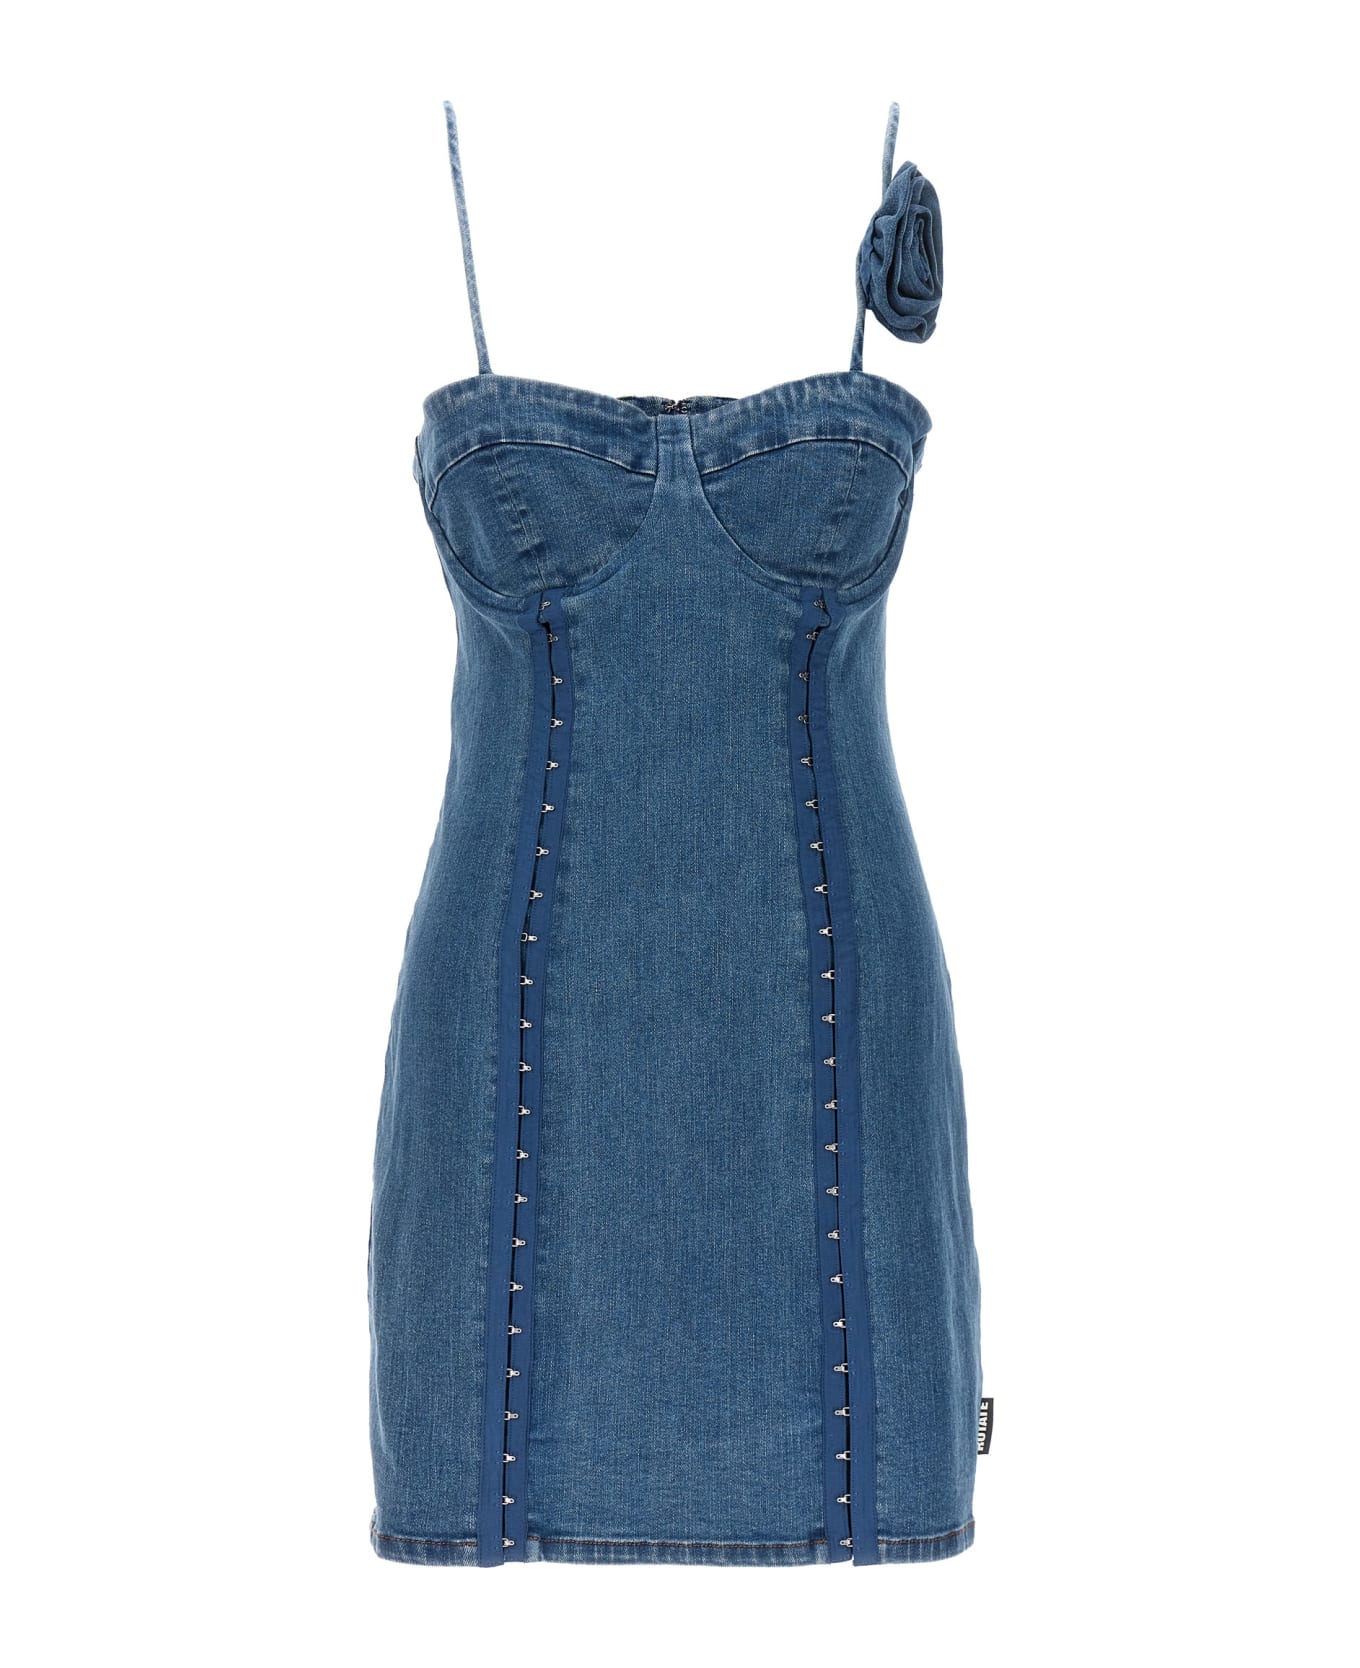 Rotate by Birger Christensen Short Flower Dress - Blue